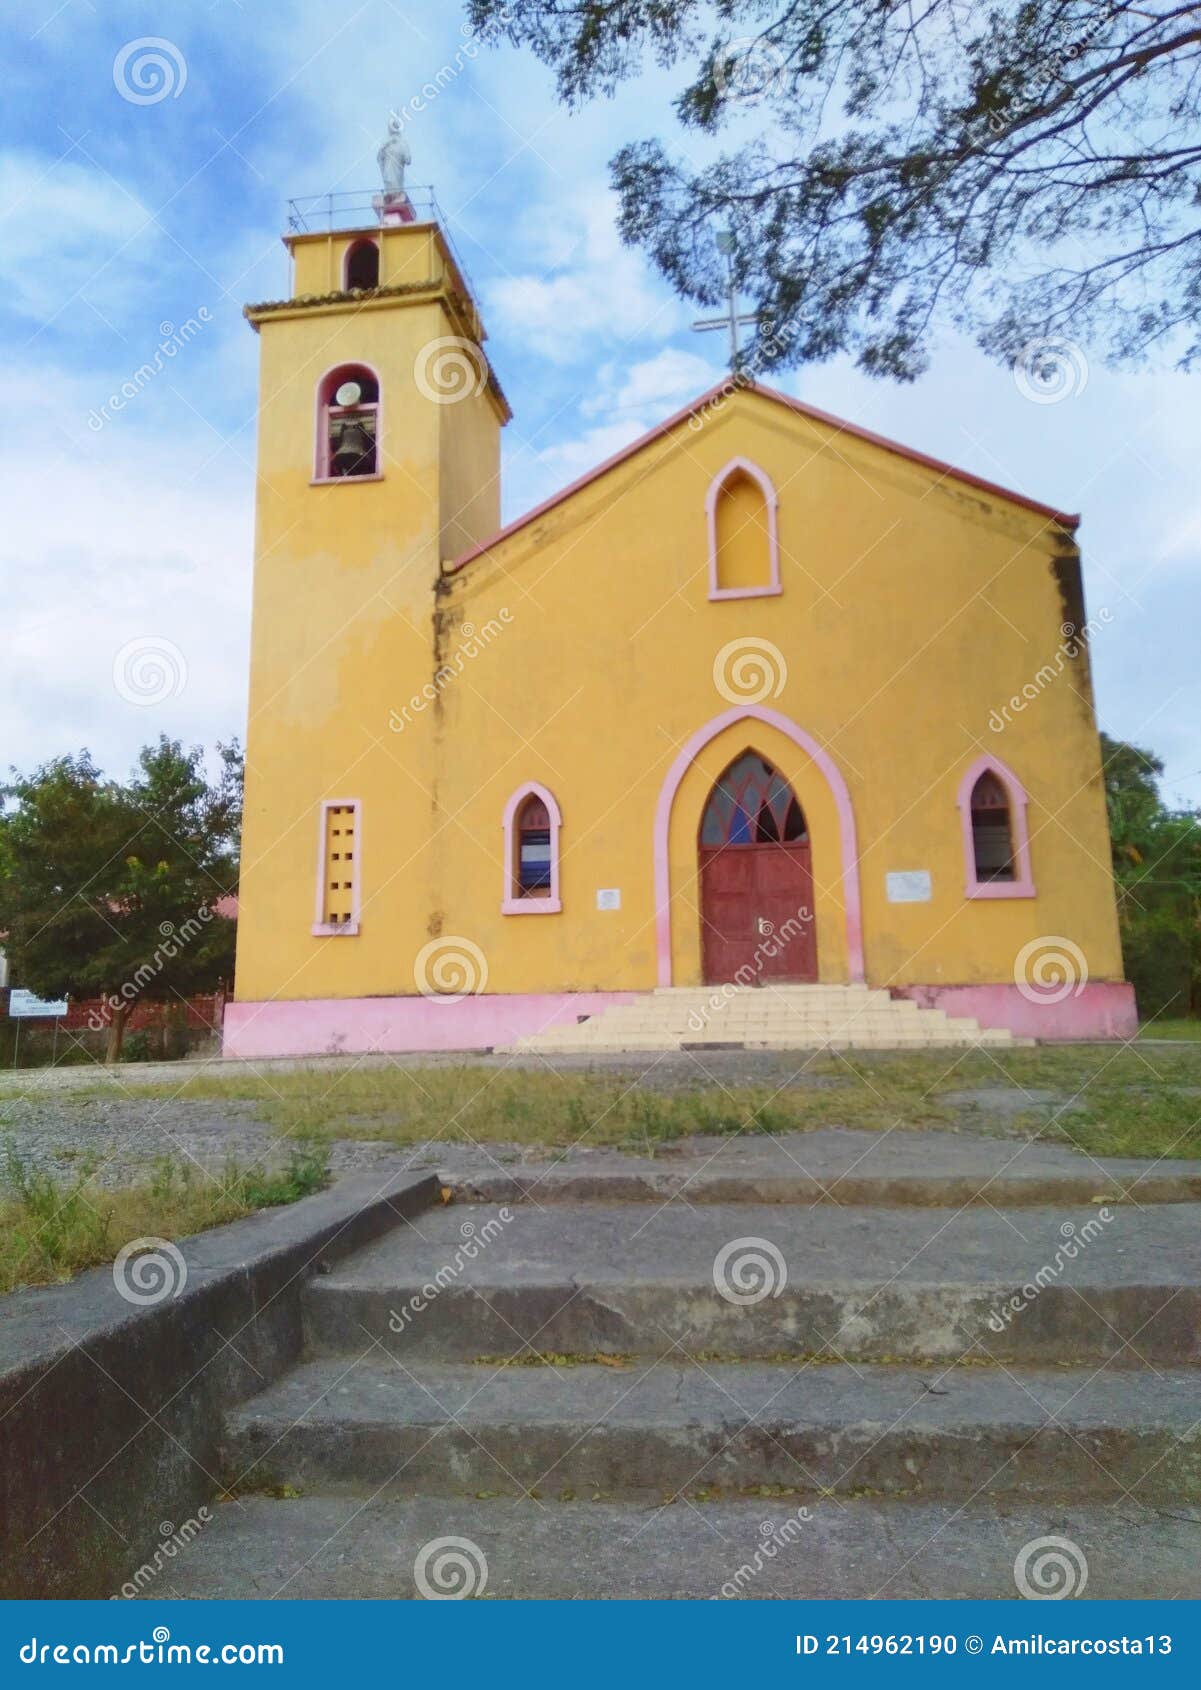 venilale church, timor-leste.